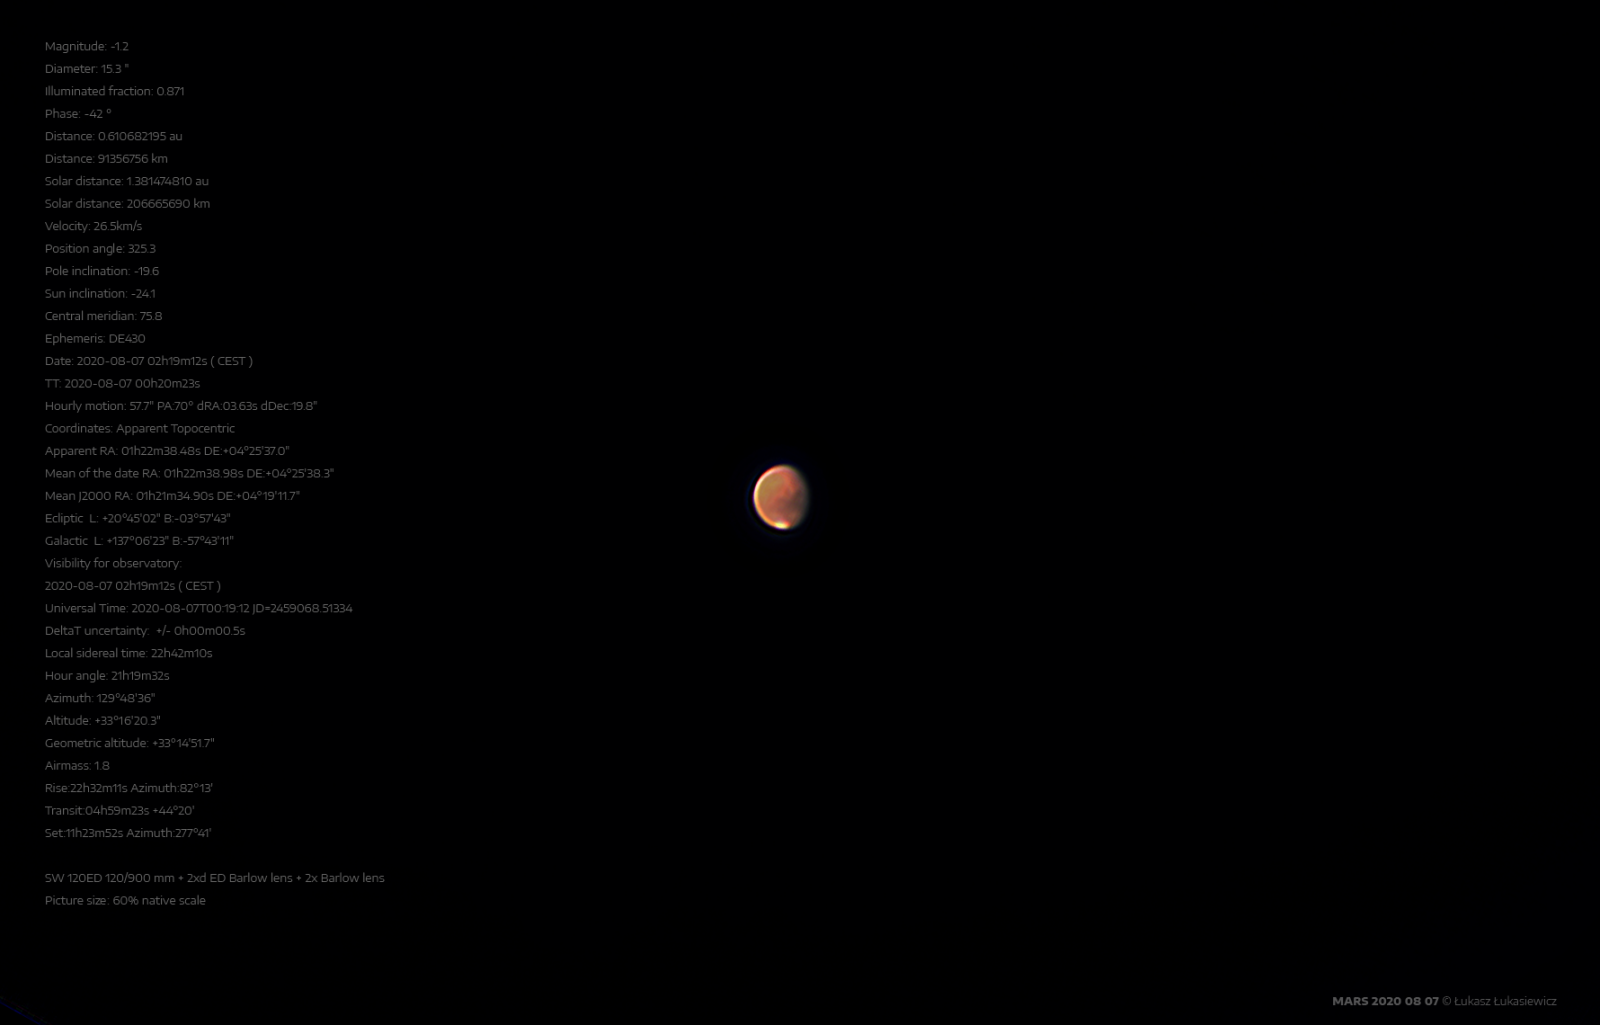 MARS-2020-08-07d.png